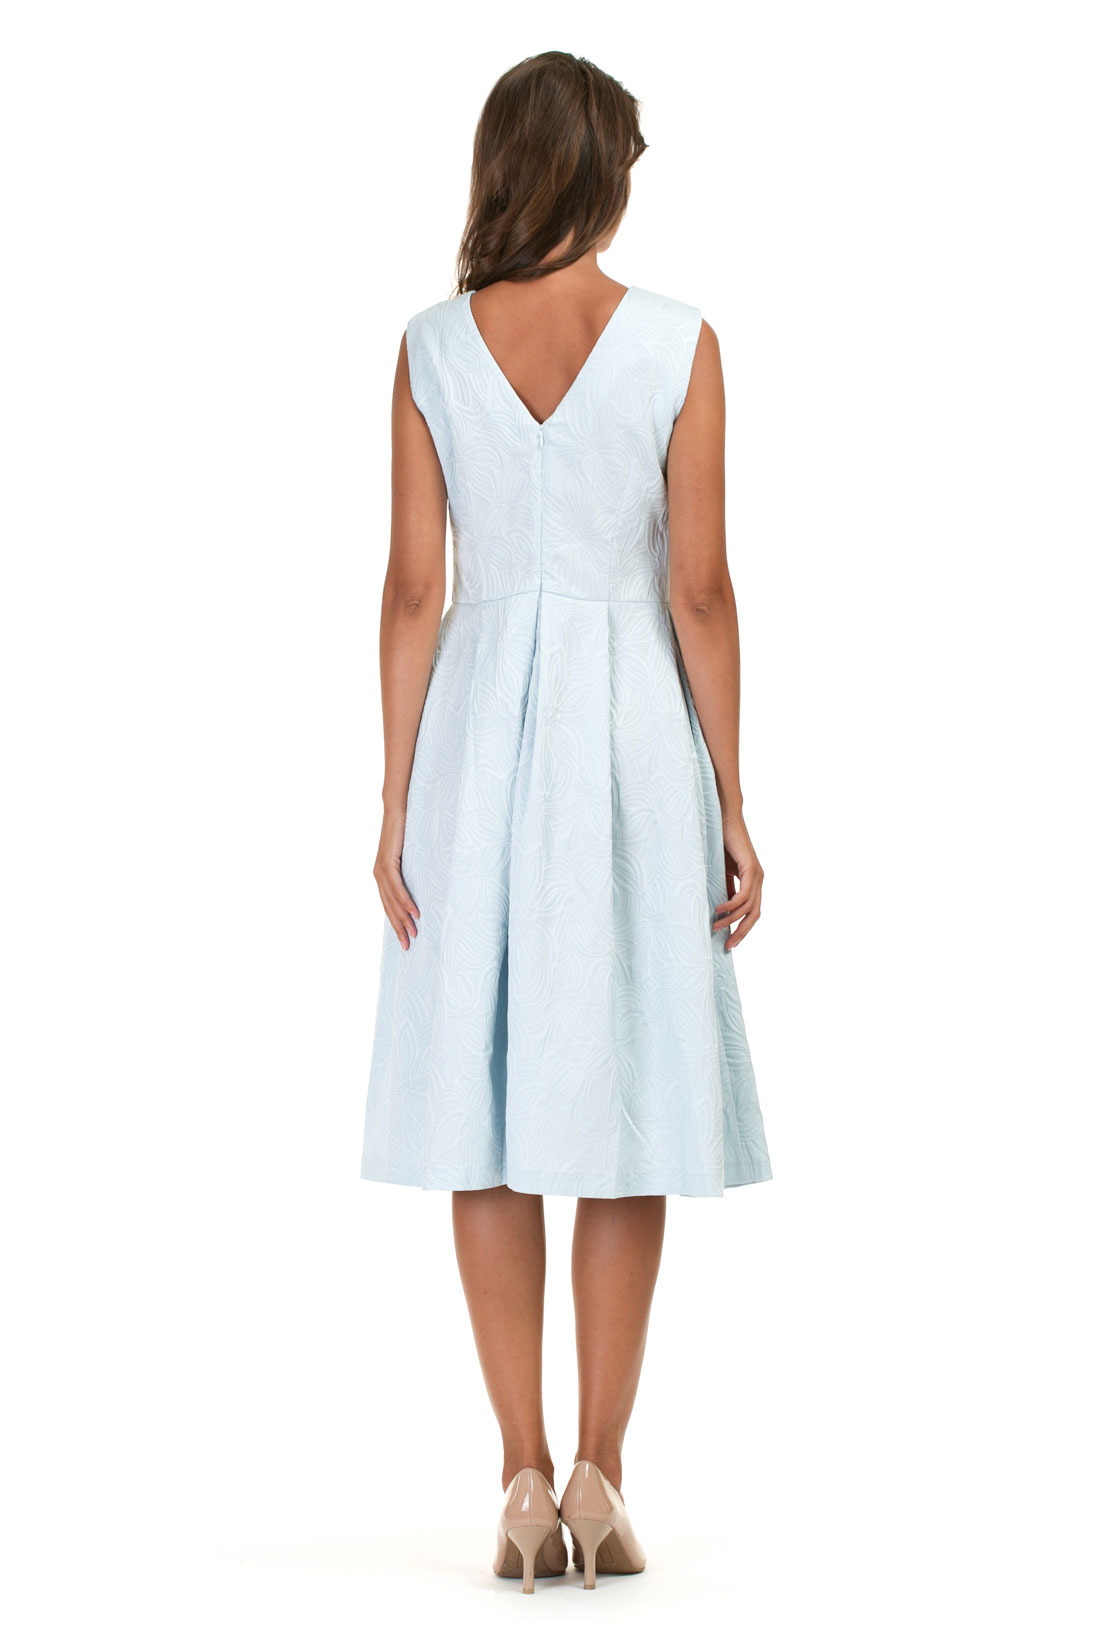 Платье из жаккардового материала (арт. baon B457063), размер XS, цвет белый Платье из жаккардового материала (арт. baon B457063) - фото 2